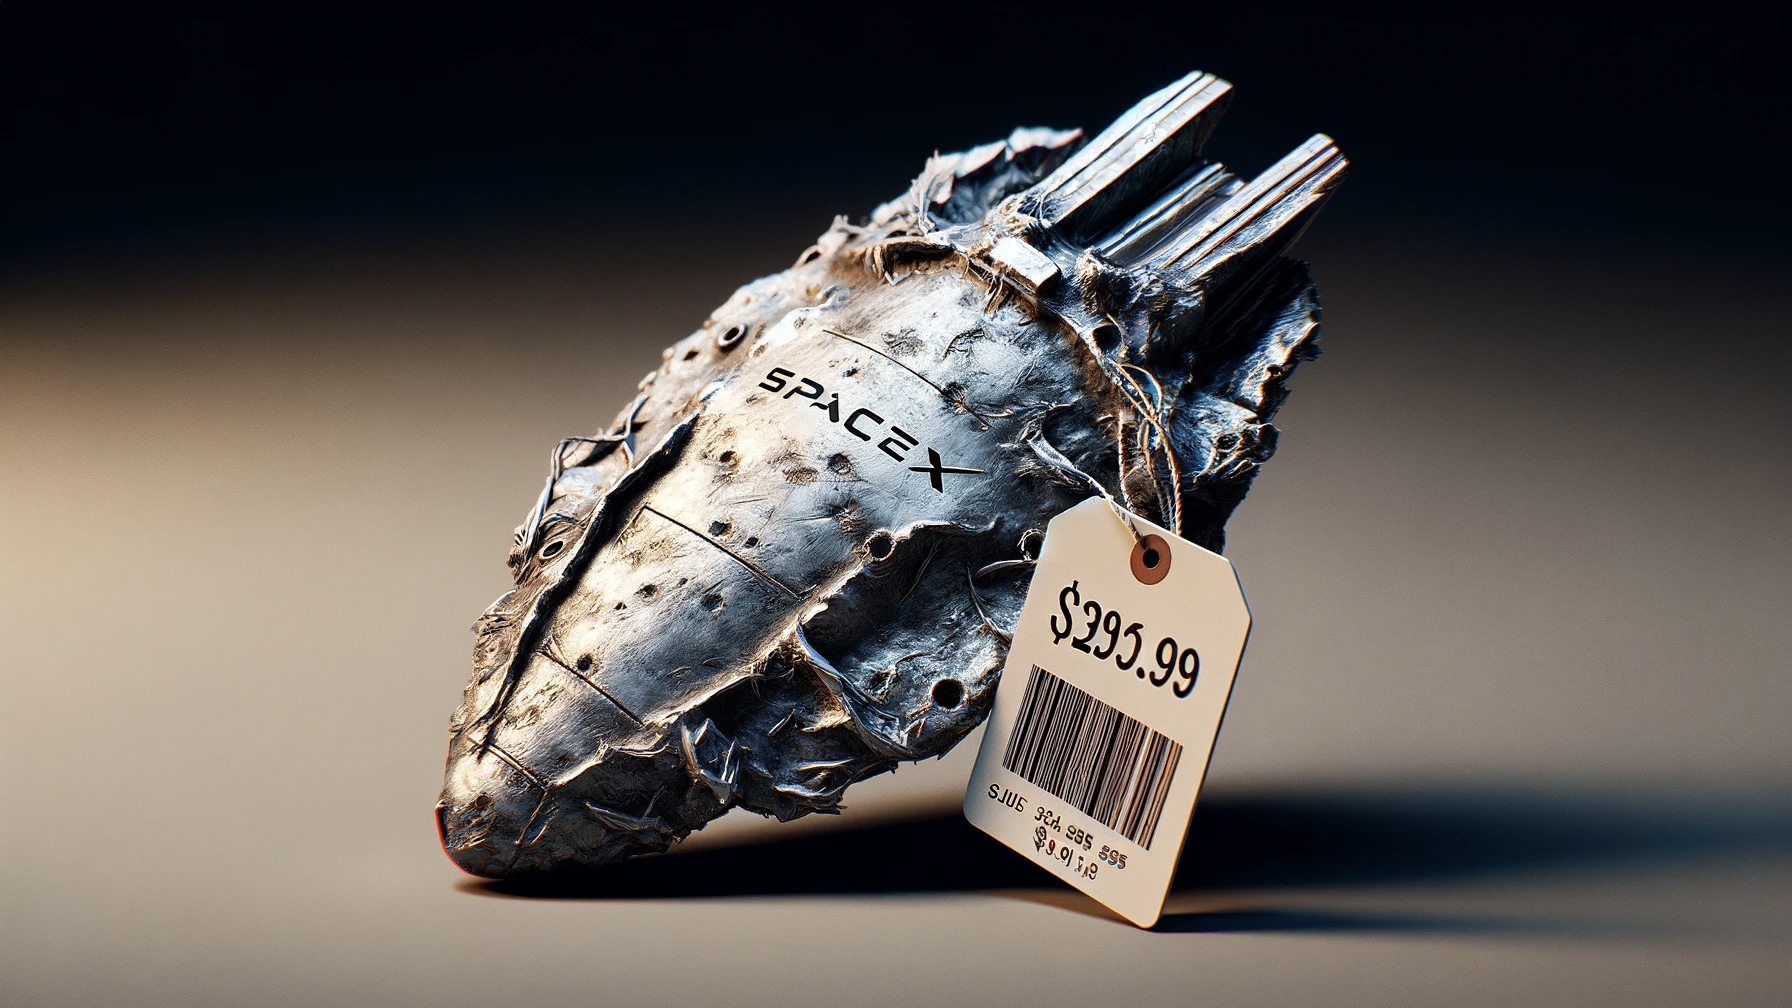 Spacex starship debris piece ebay